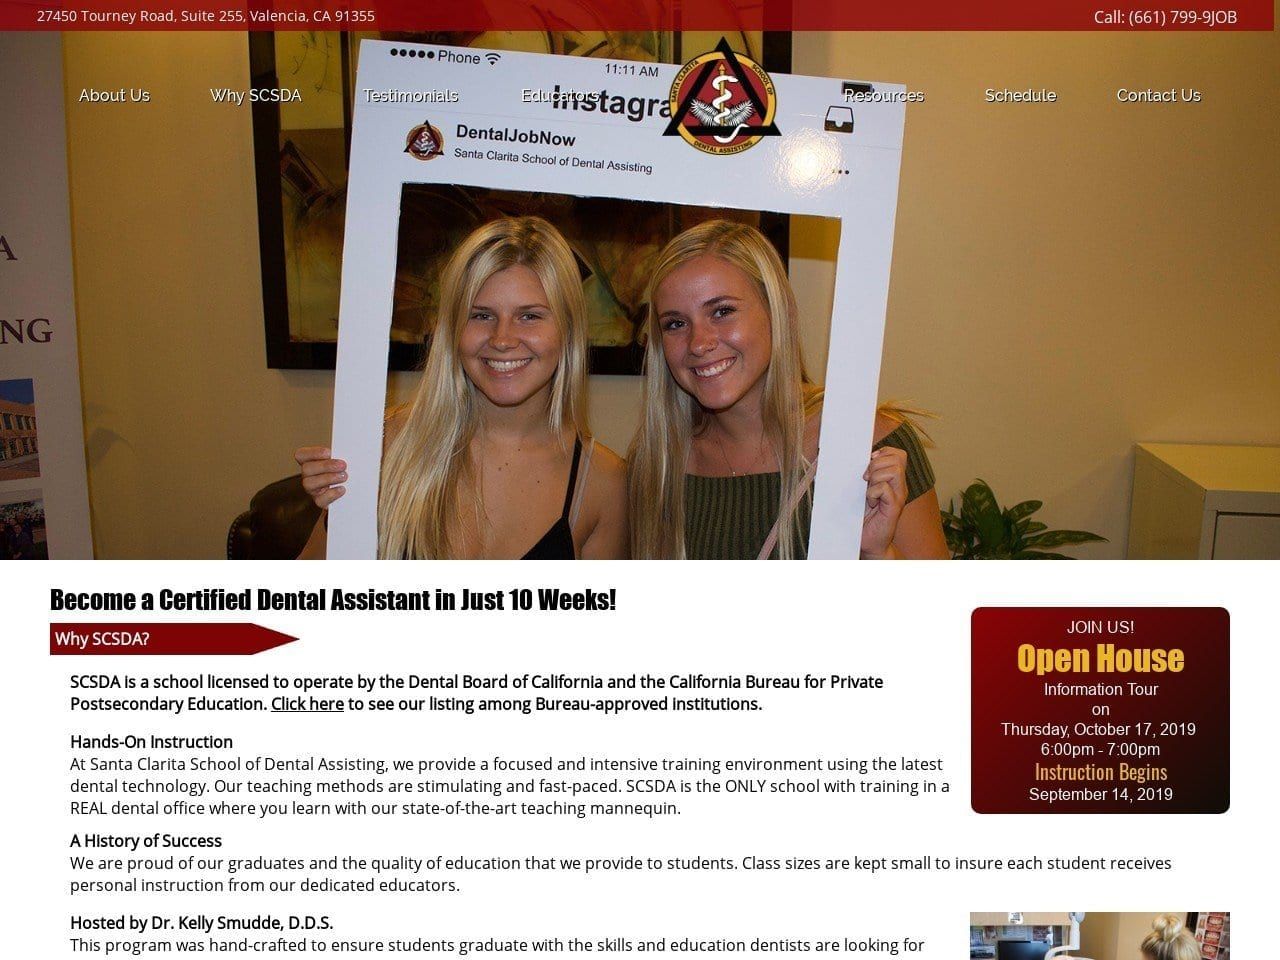 Santa Clarita School of Dental Assisting Website Screenshot from dentaljobnow.com